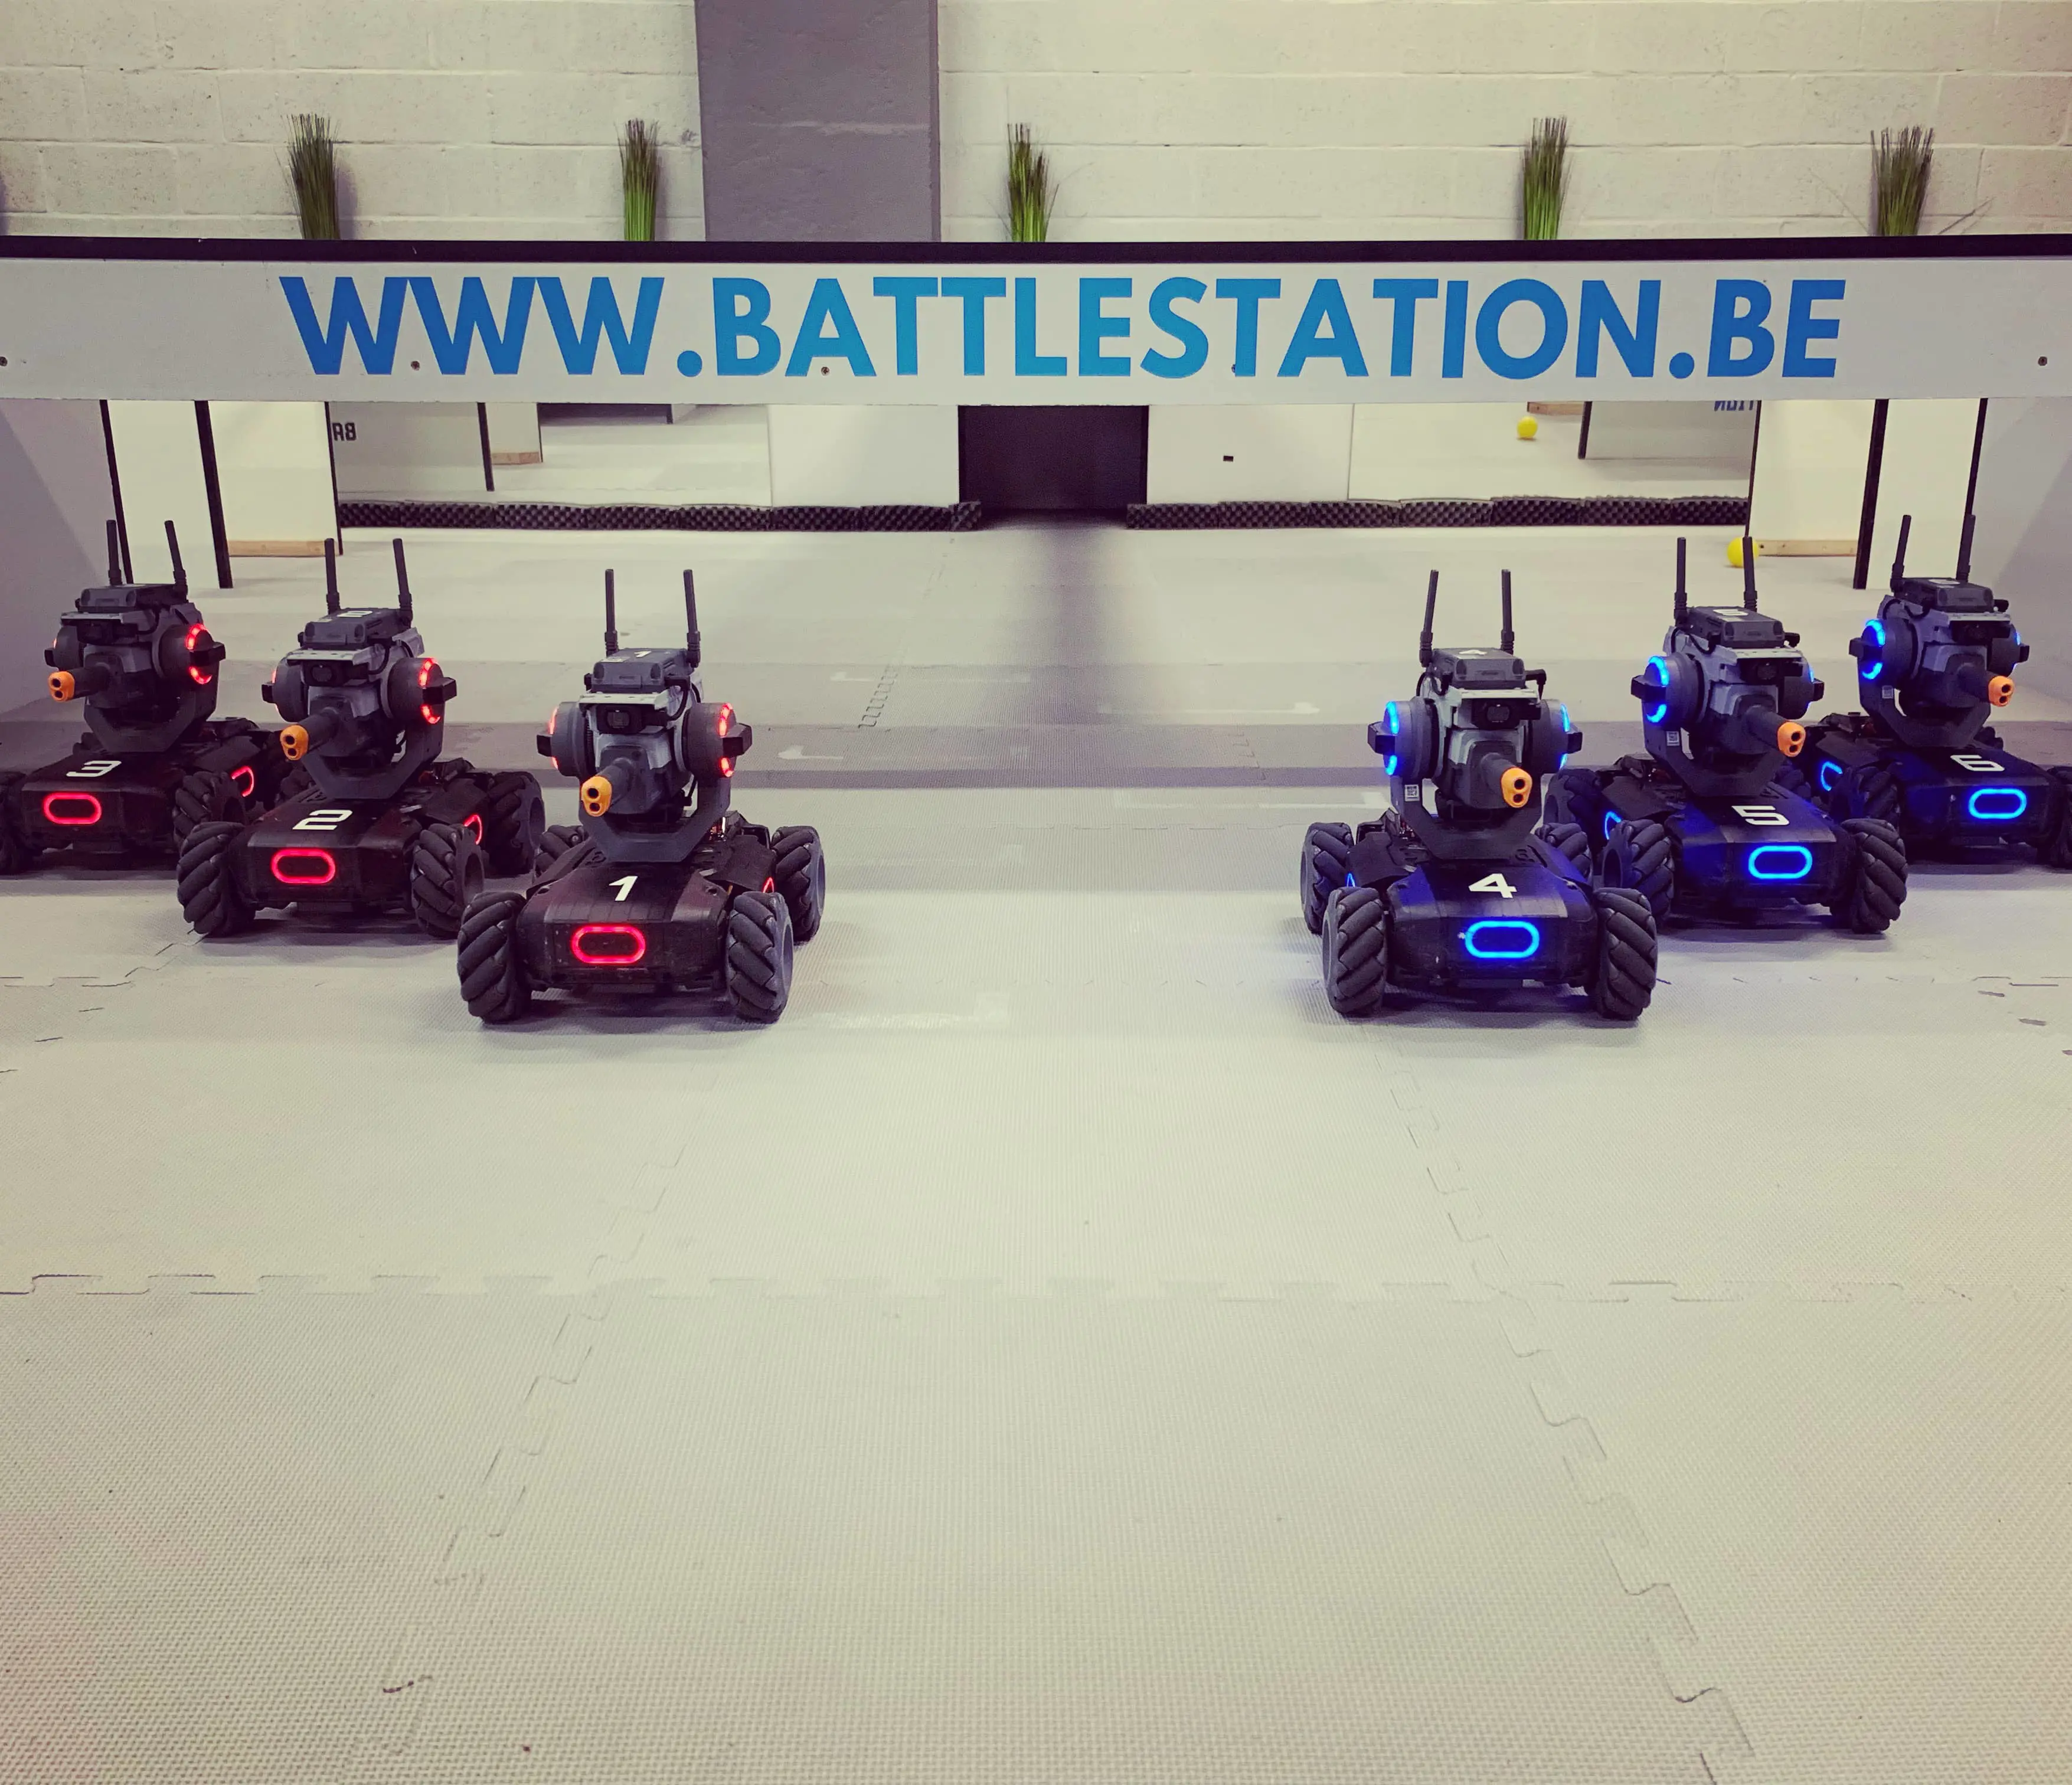 Battlestation robots, Battlestation rood en blauw